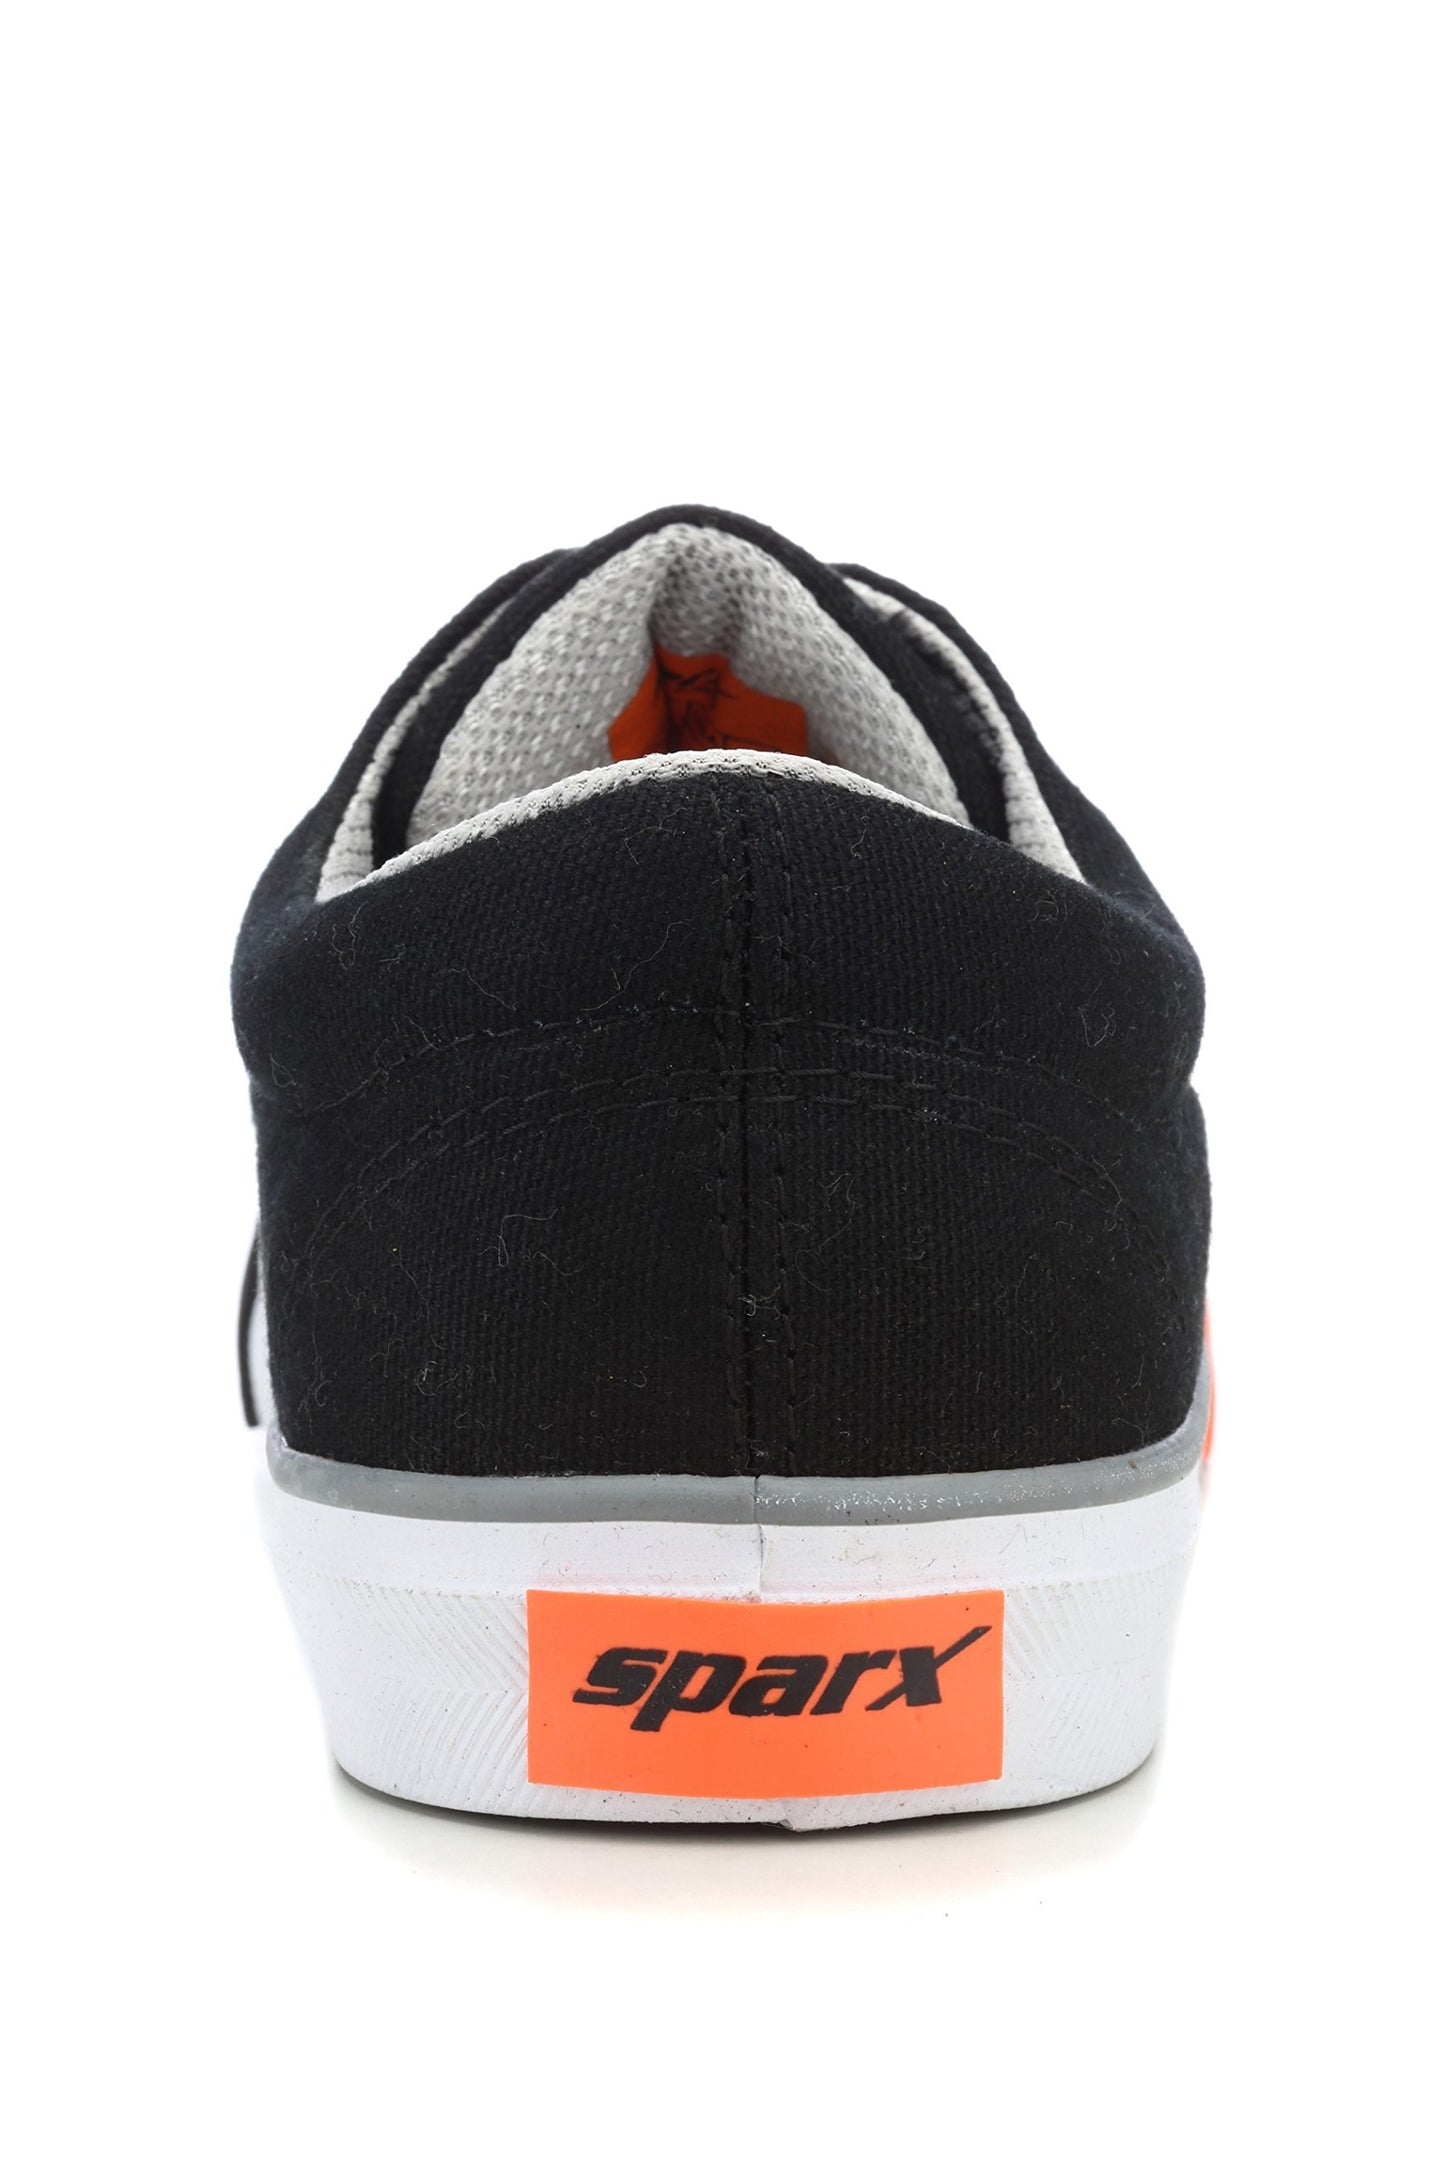 Sparx Men's Black Sneakers